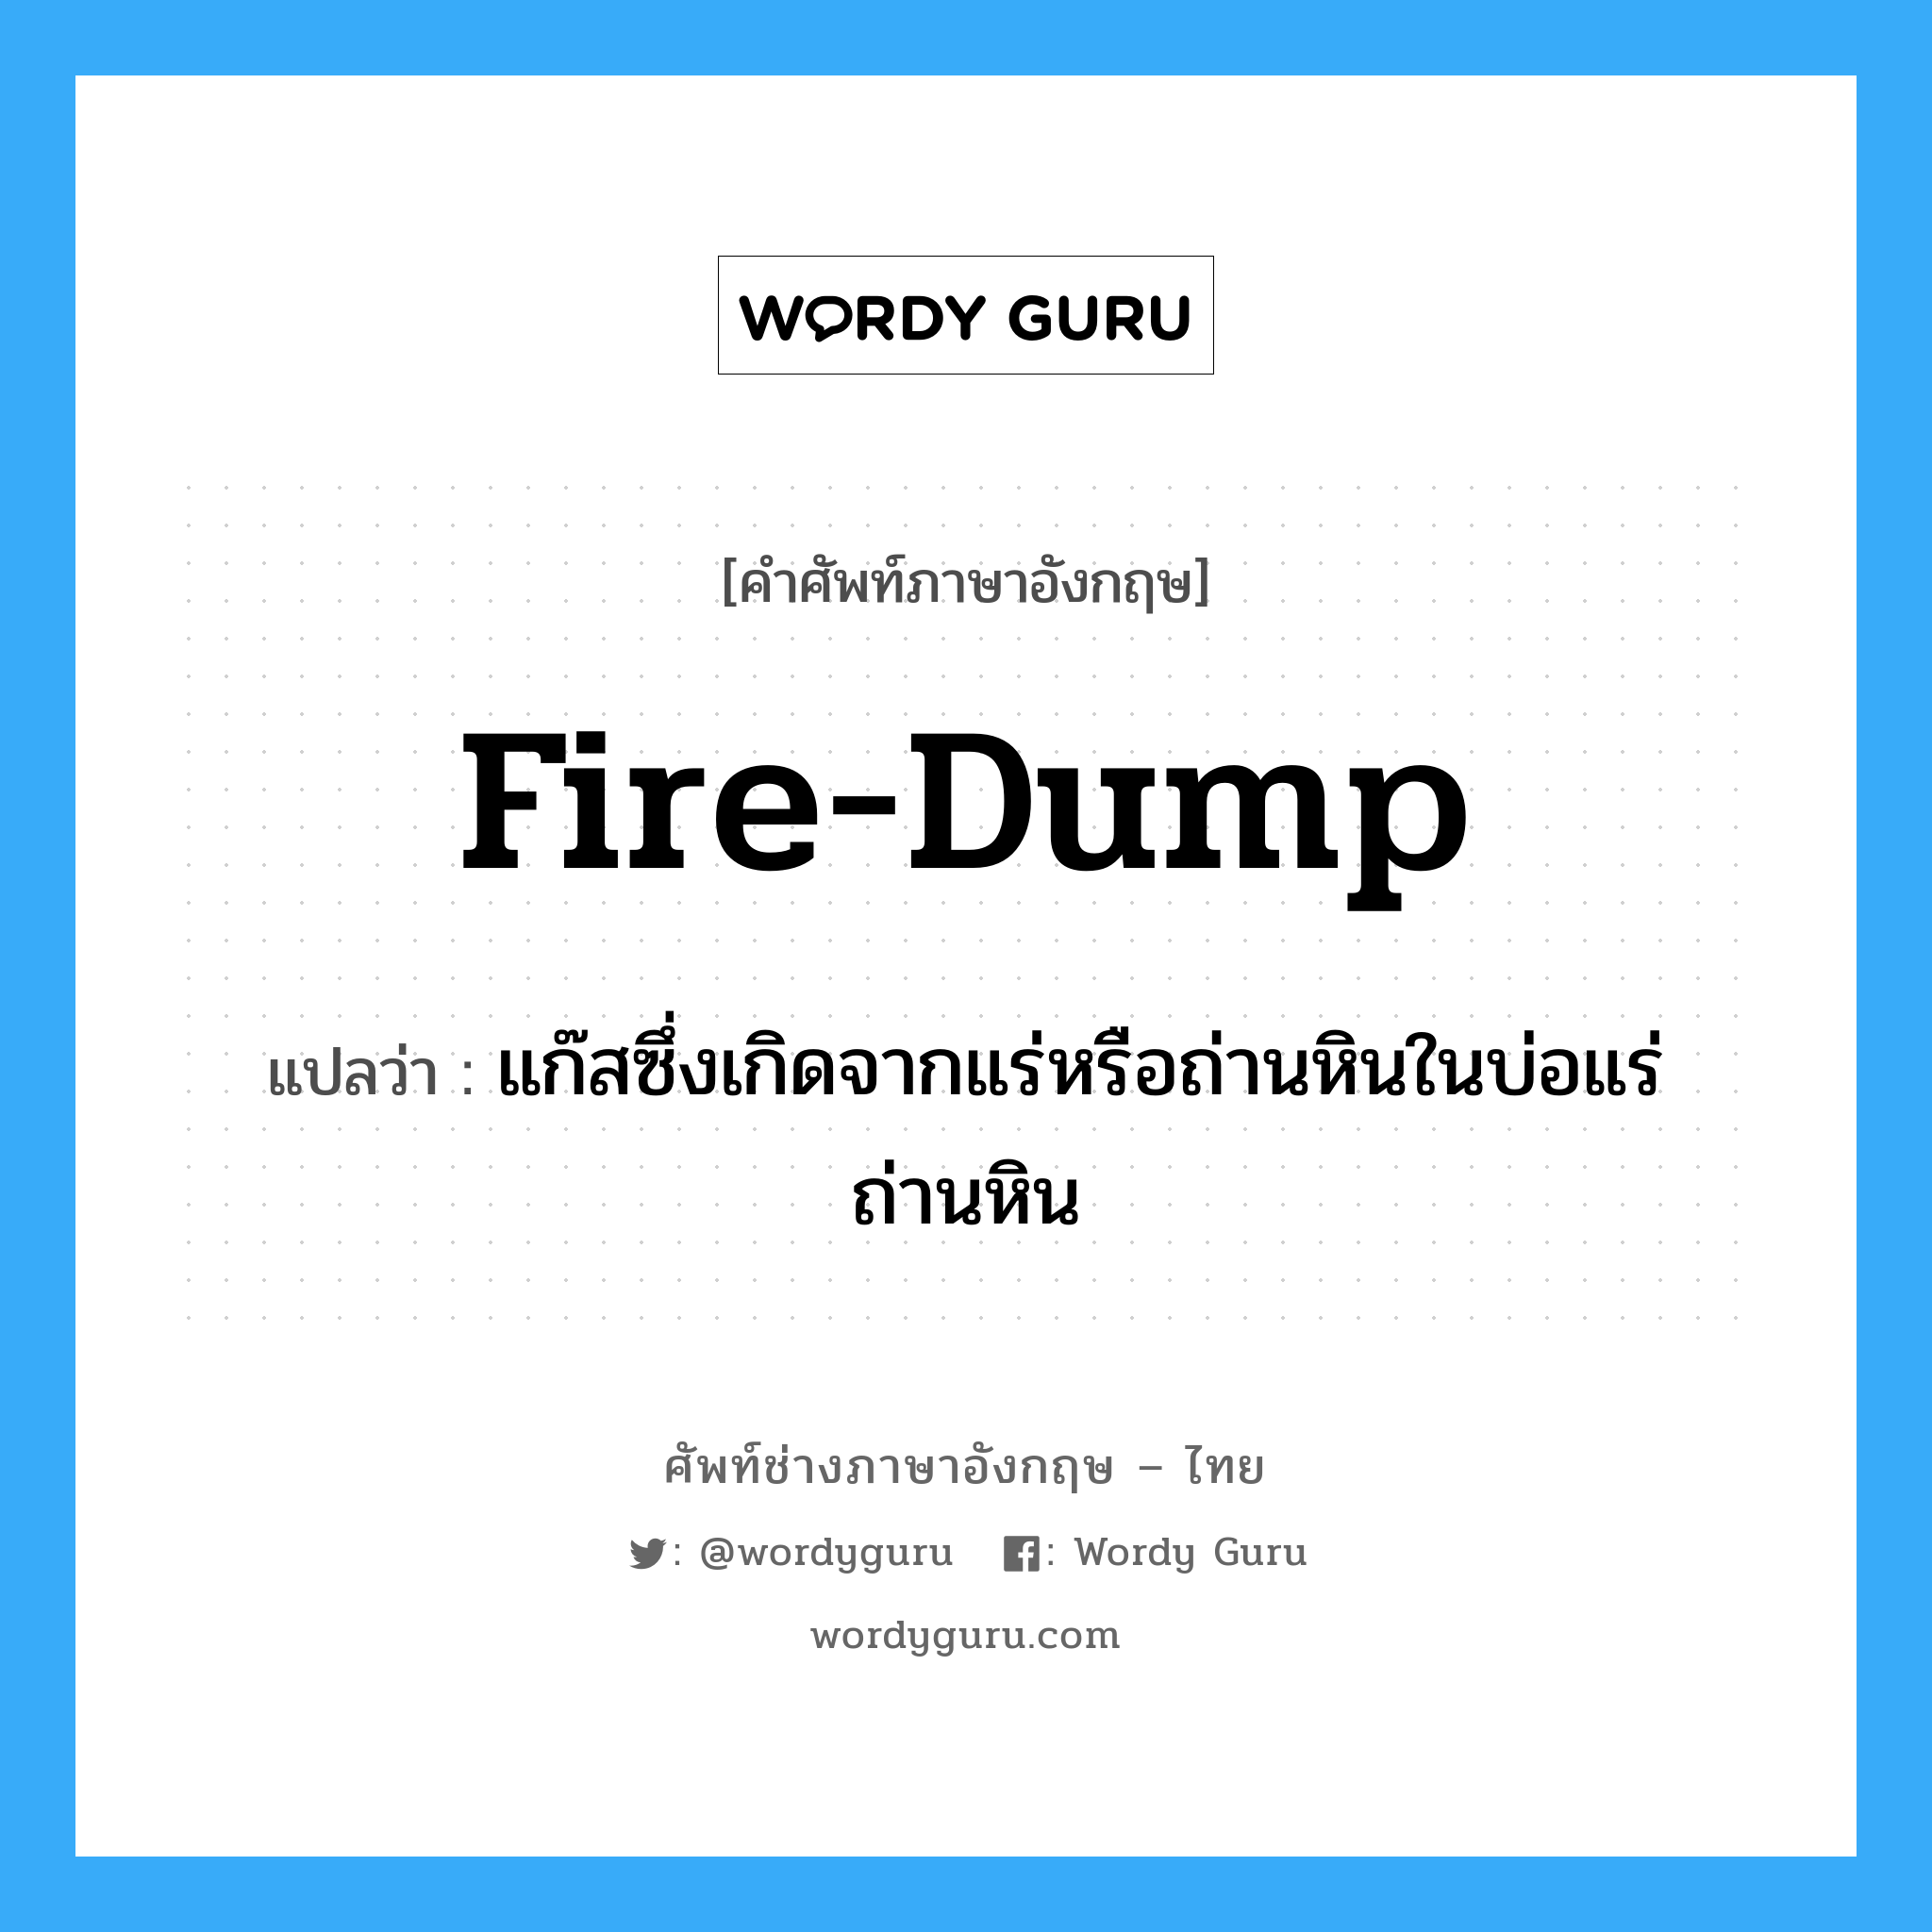 fire-dump แปลว่า?, คำศัพท์ช่างภาษาอังกฤษ - ไทย fire-dump คำศัพท์ภาษาอังกฤษ fire-dump แปลว่า แก๊สซึ่งเกิดจากแร่หรือถ่านหินในบ่อแร่ถ่านหิน